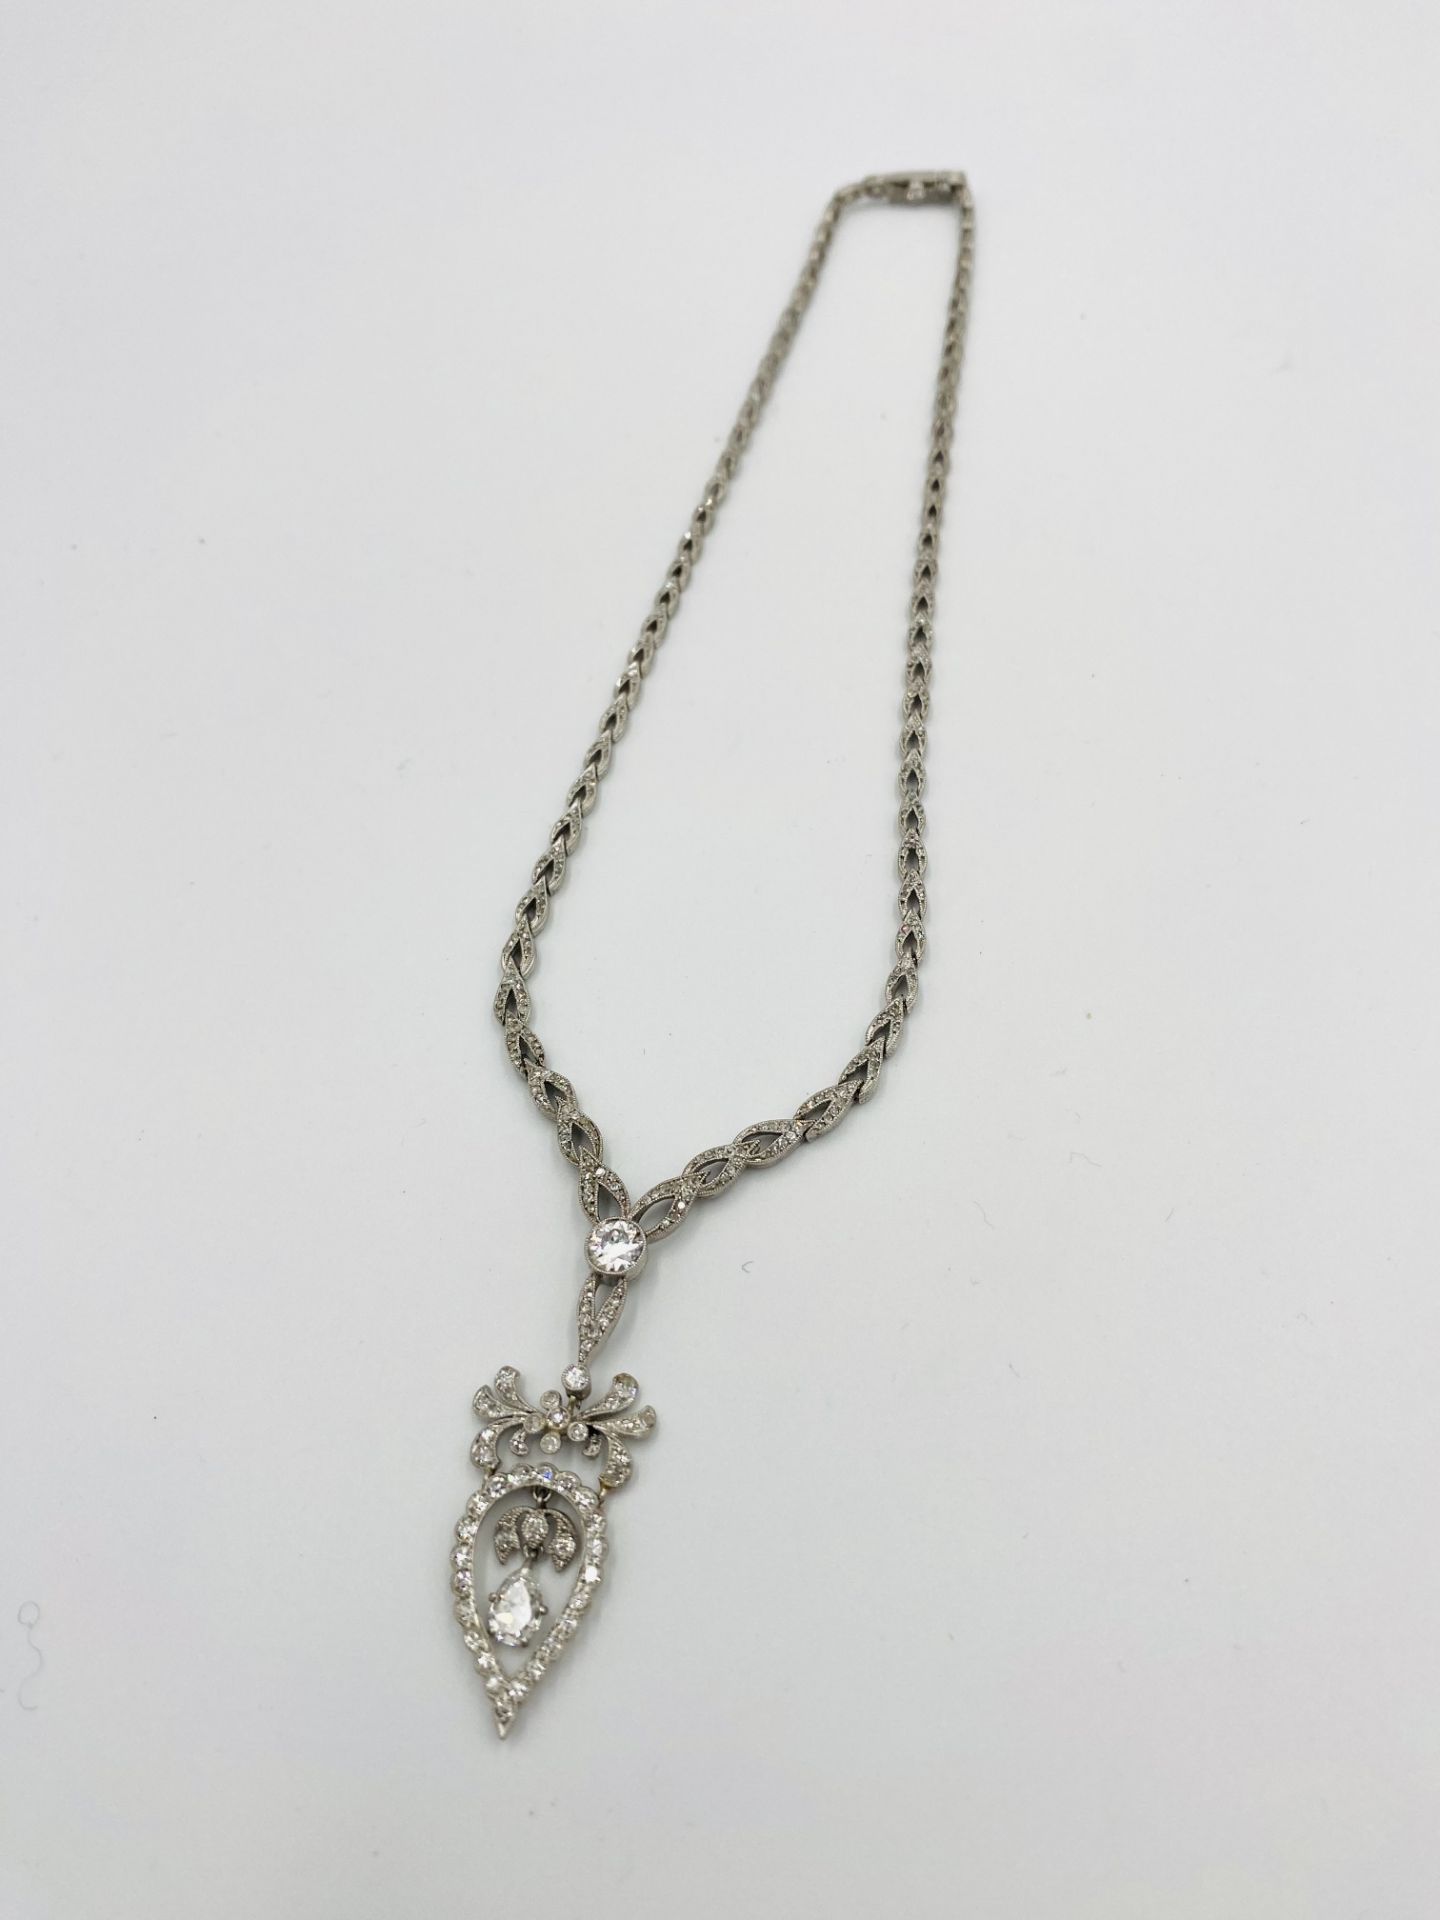 Edwardian white gold and diamond necklace - Image 4 of 10